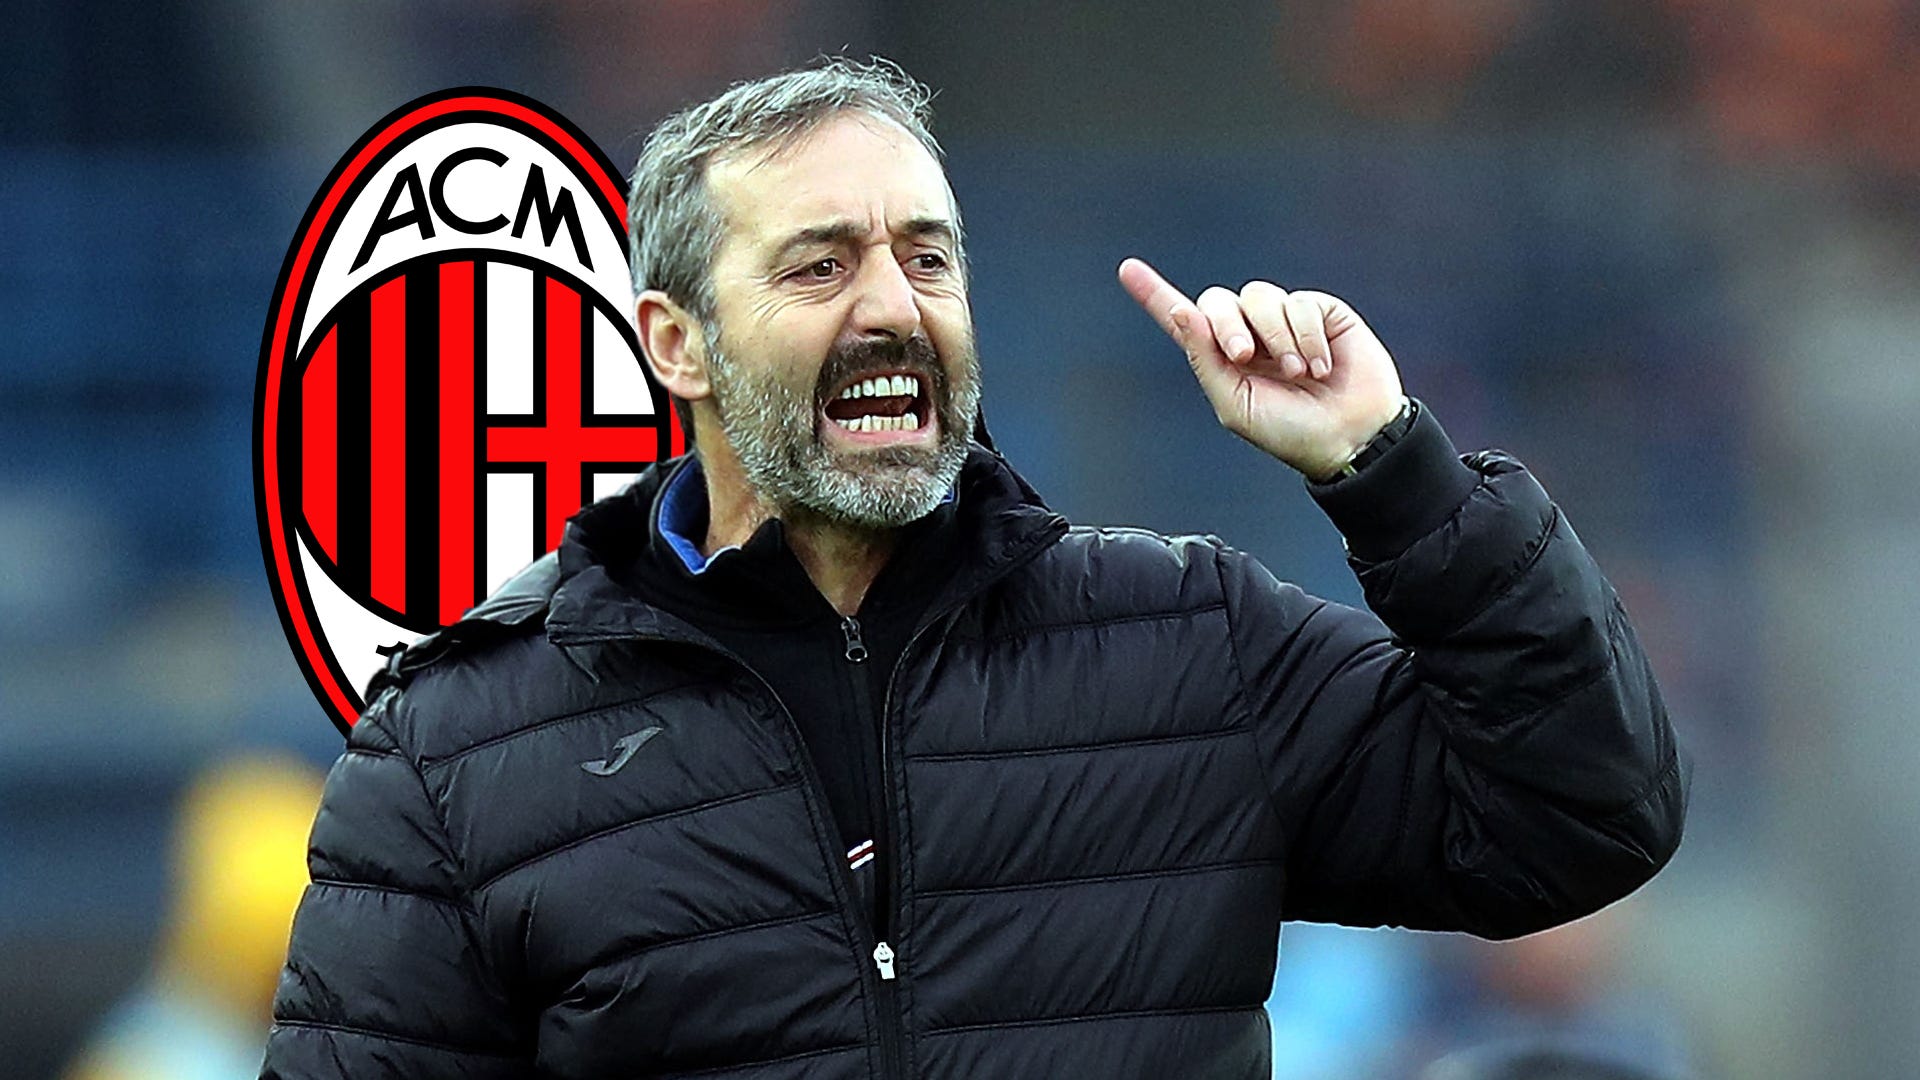 AC Milan news: Marco Giampaolo announced as head coach until 2021 